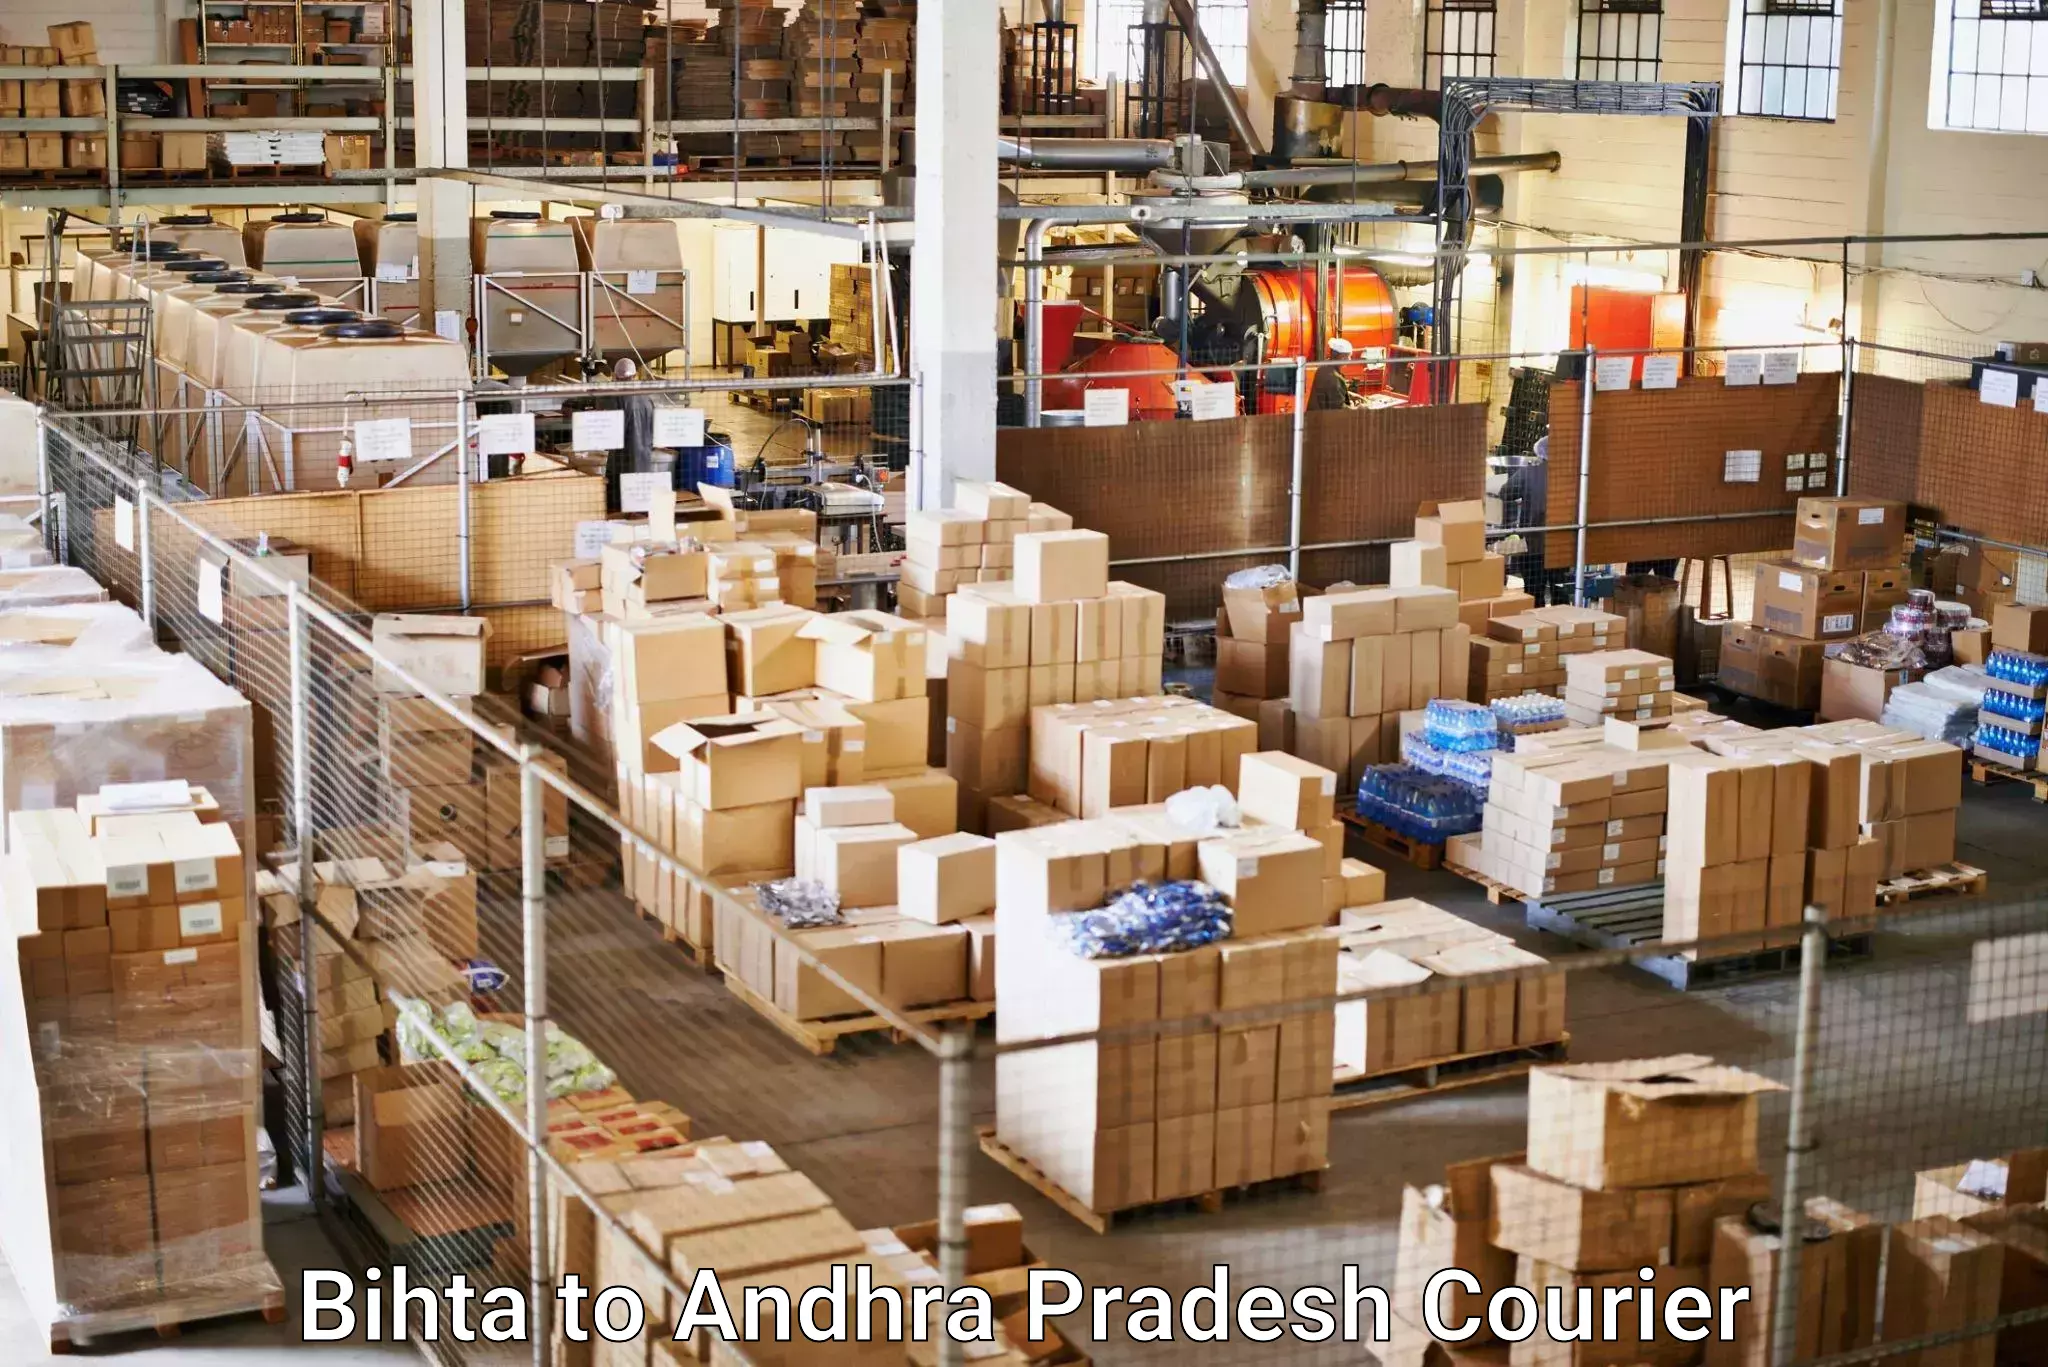 Ground shipping Bihta to Ponnur